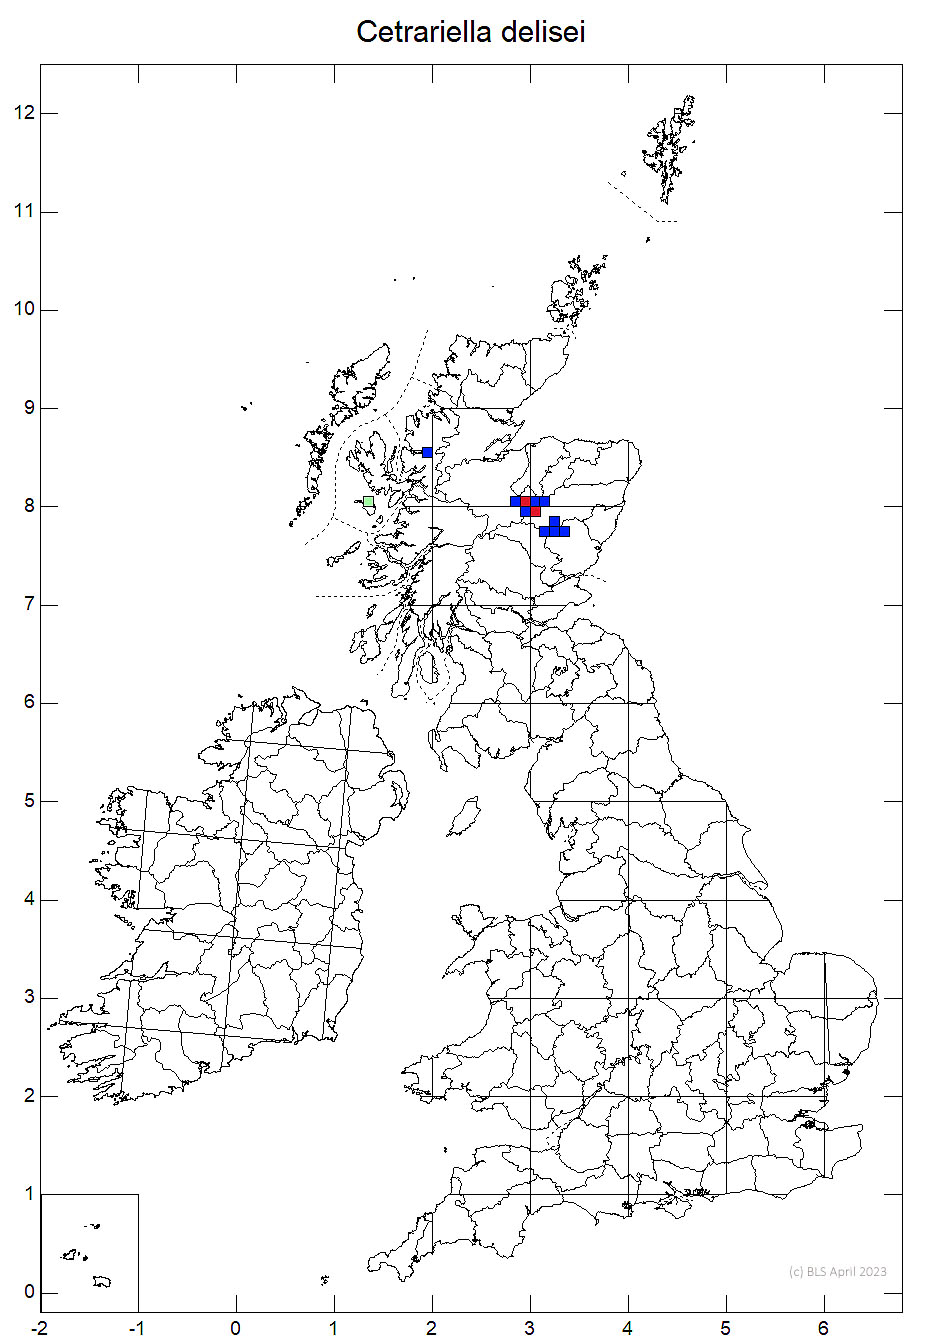 Cetrariella delisei 10km sq distribution map